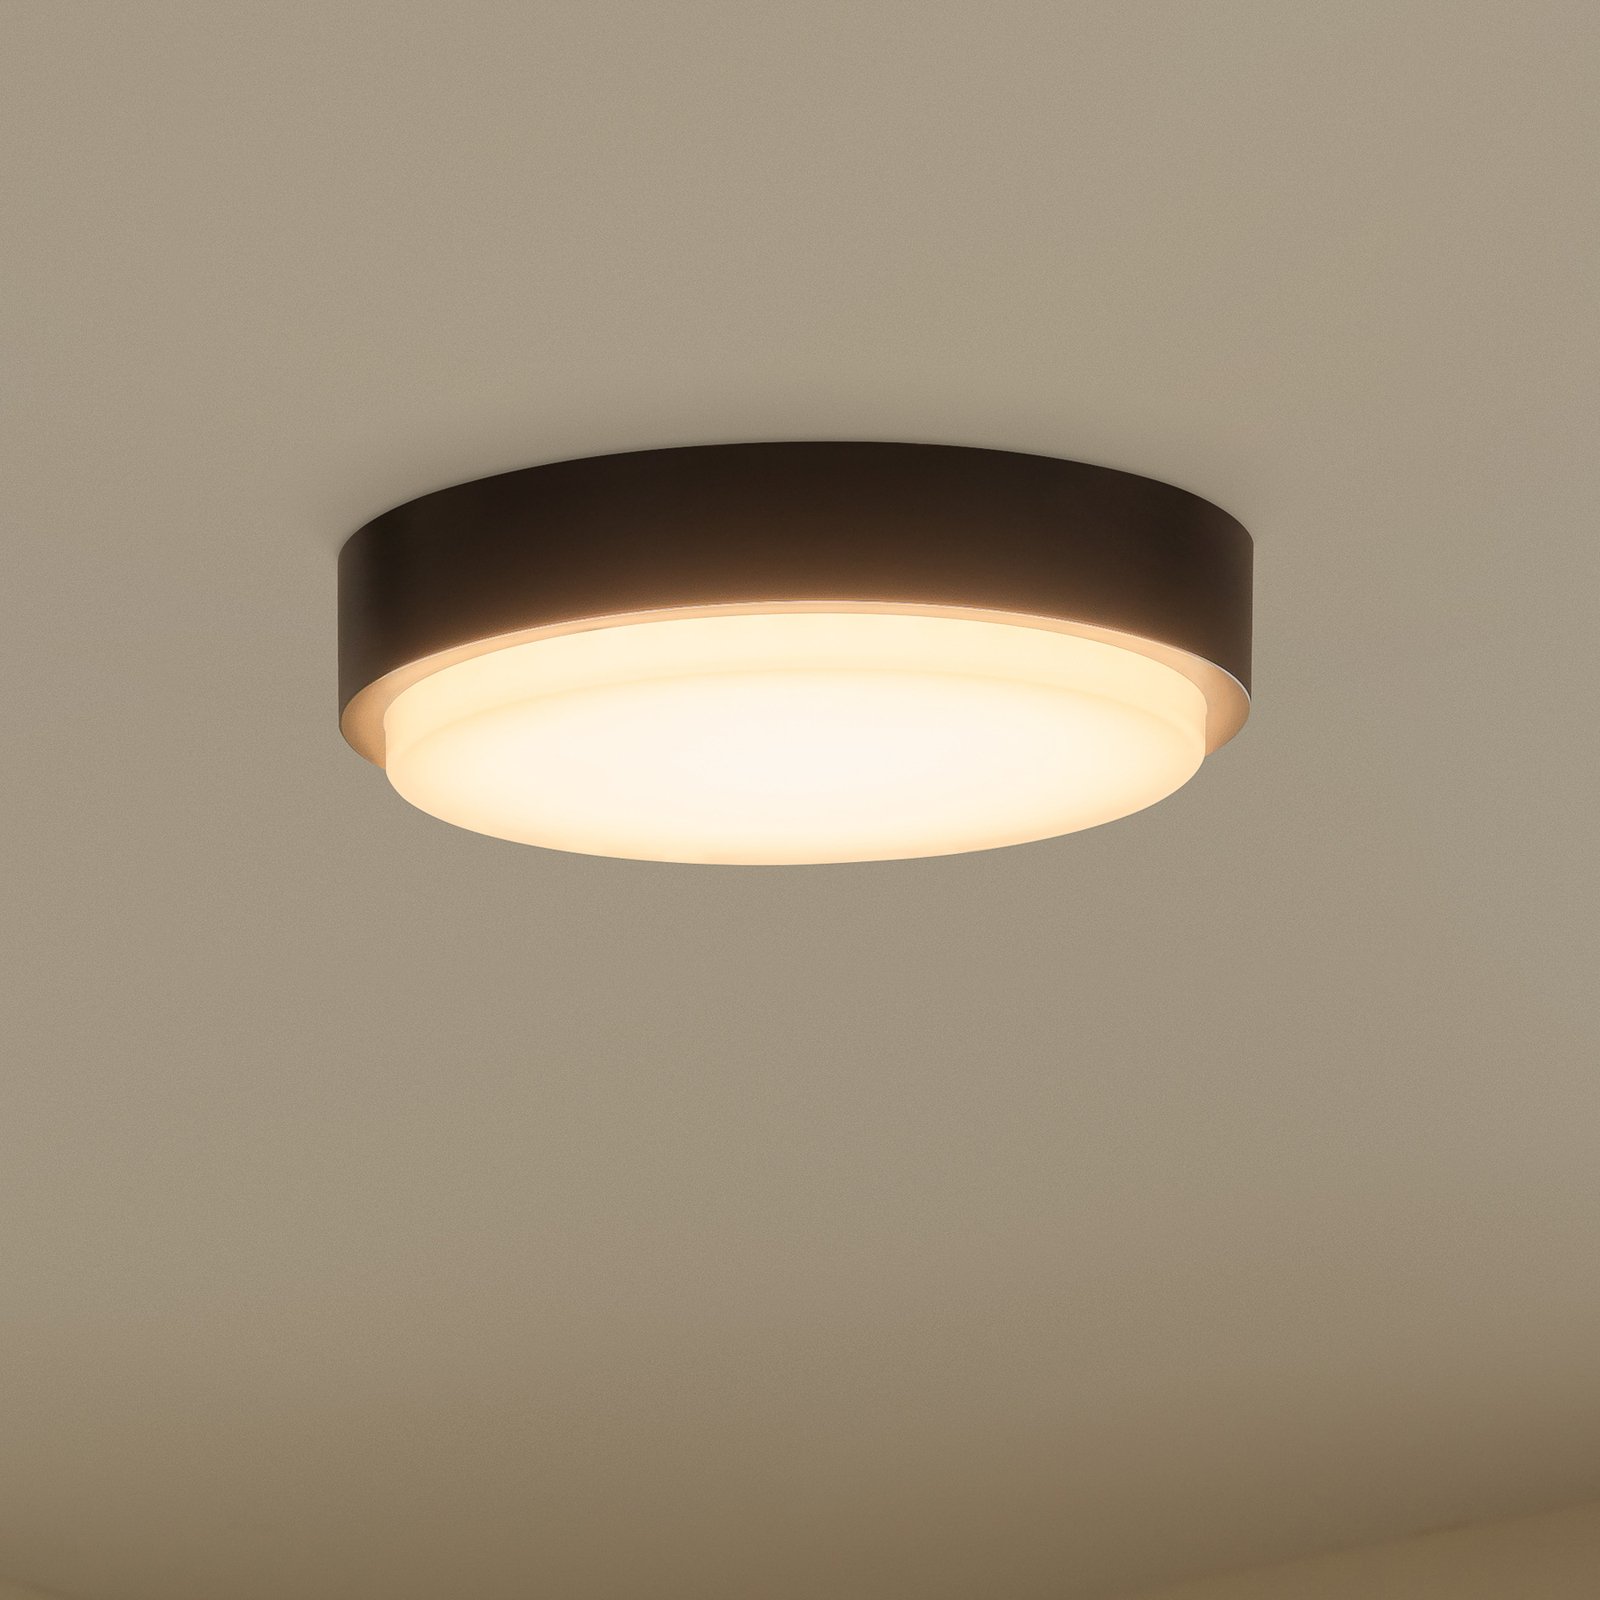 Udendørs loftlampe Nermin med LED, IP65, rund